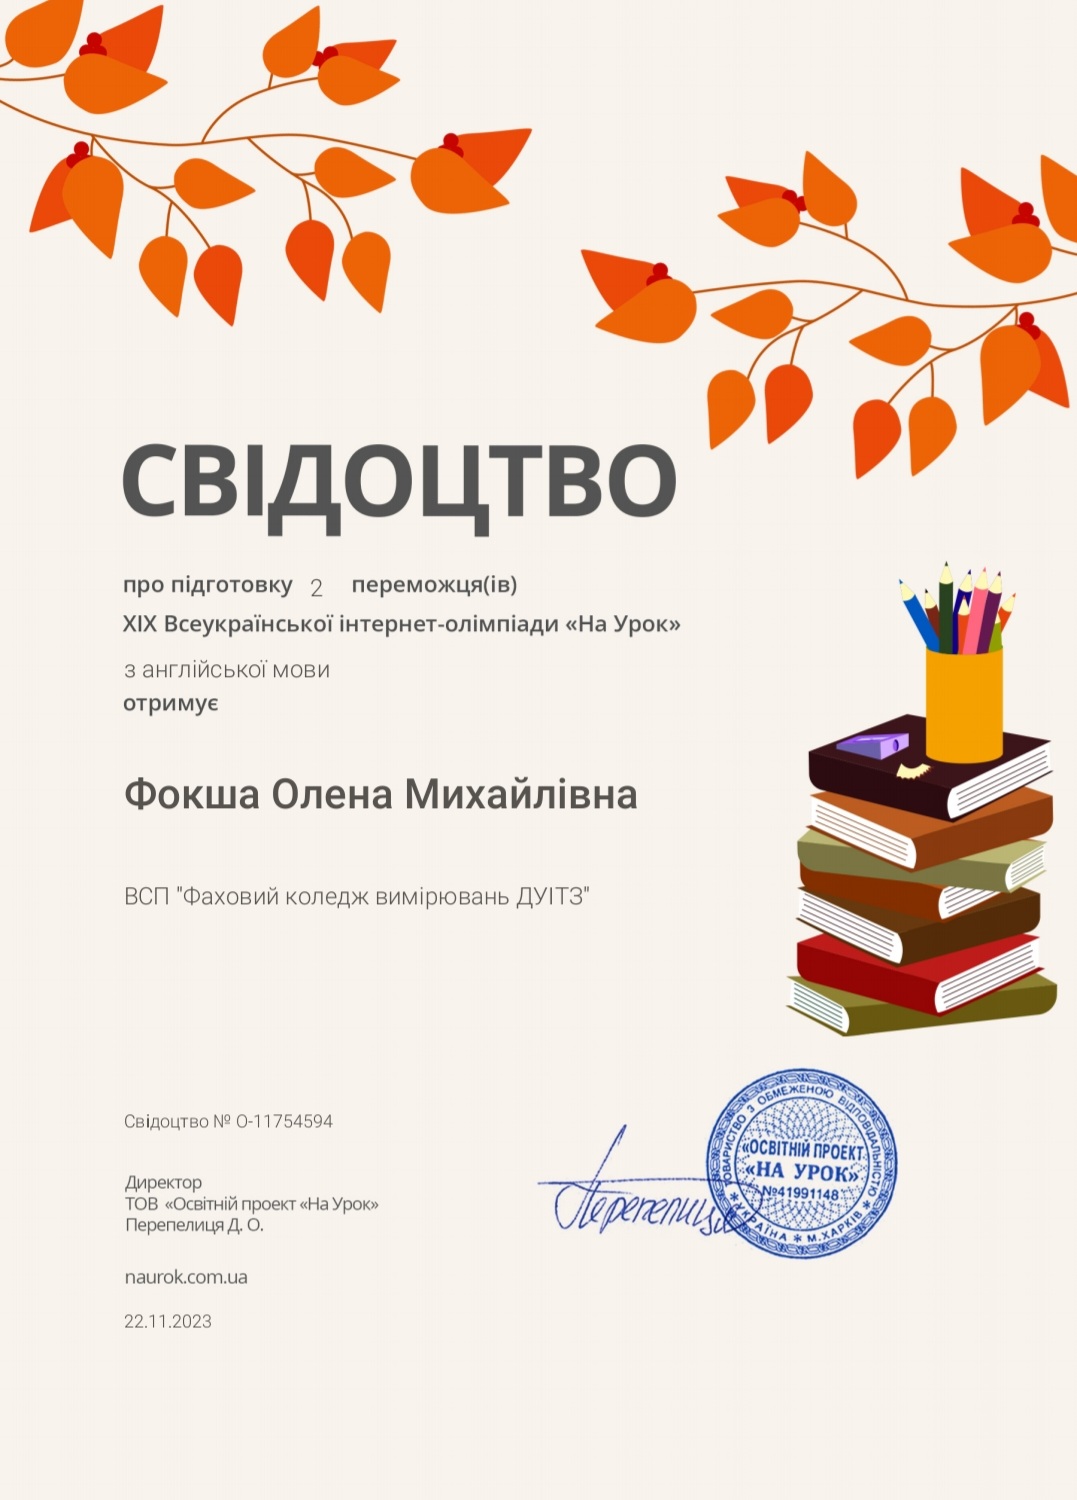 Переможець XIX Всеукраїнської інтернет-олімпіади «На Урок» з англійської мови